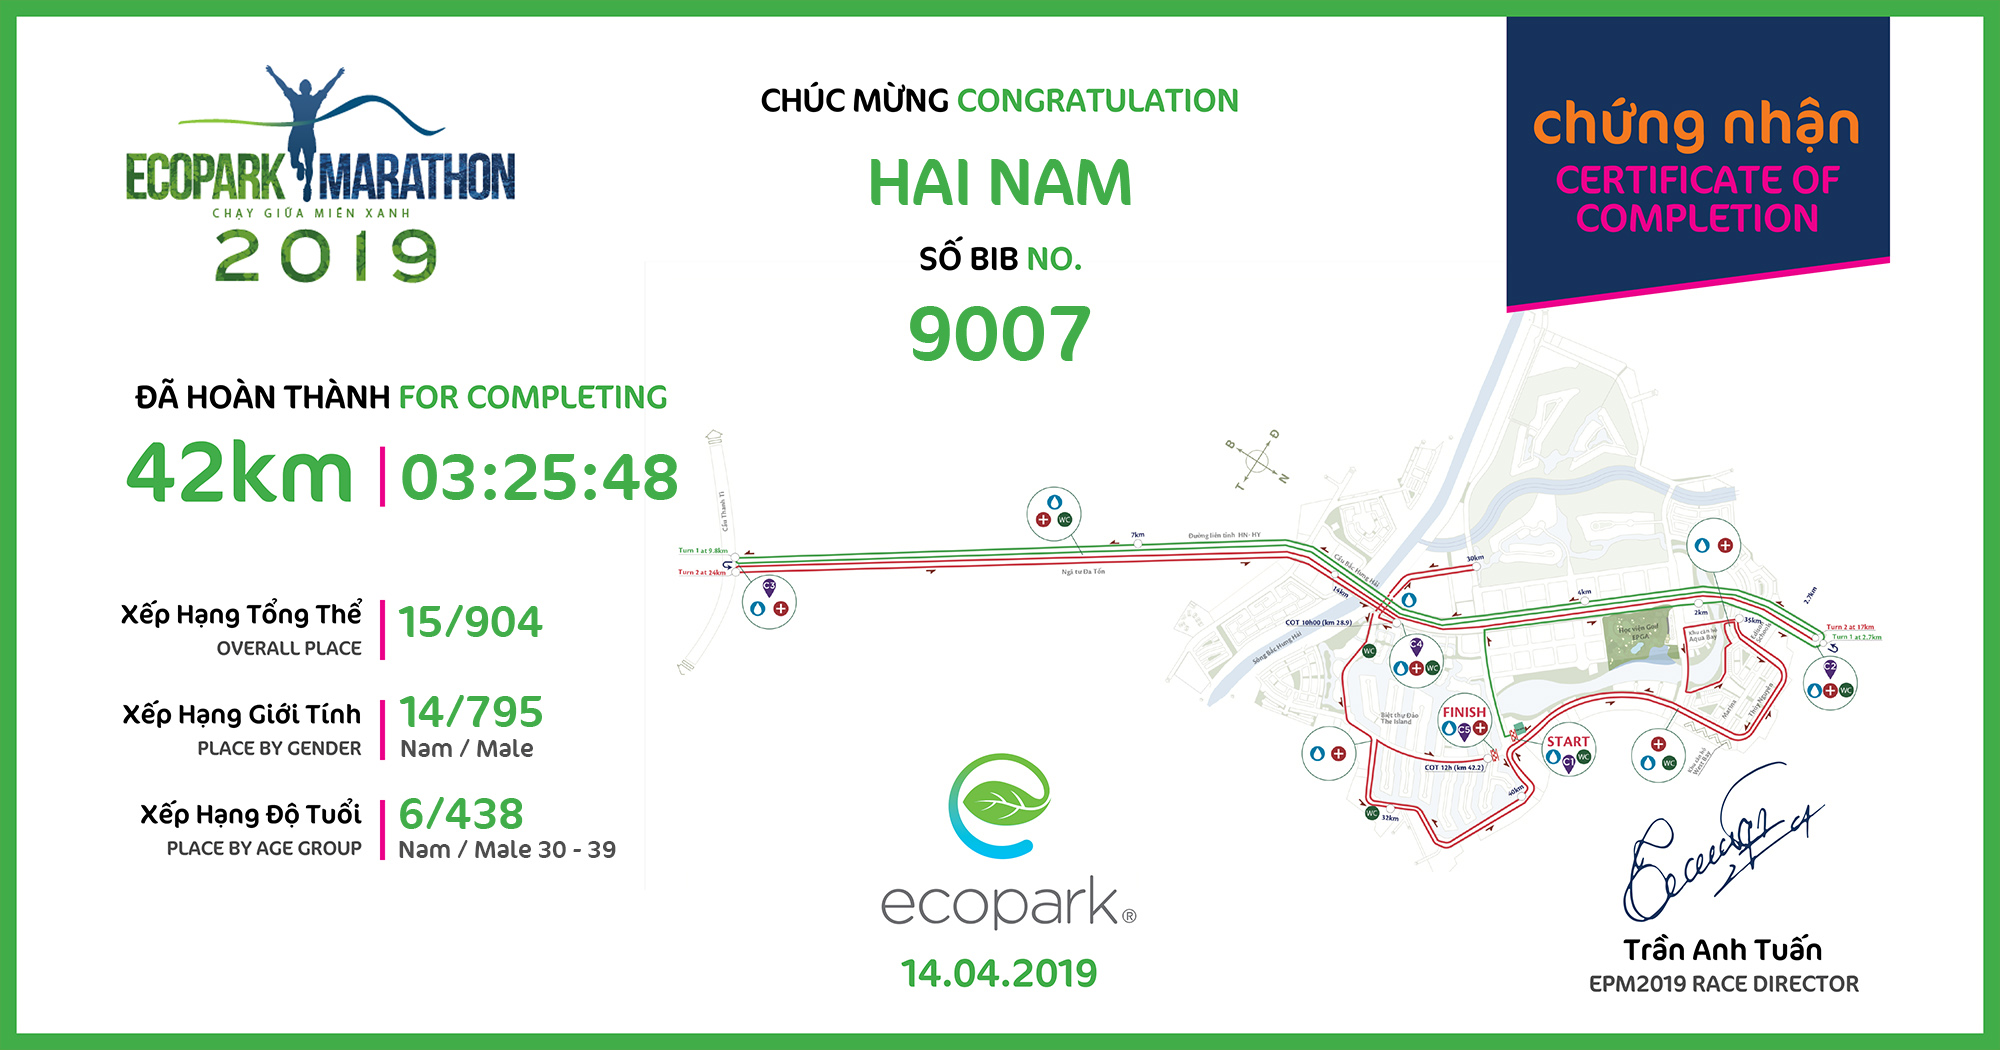 9007 - Hai Nam